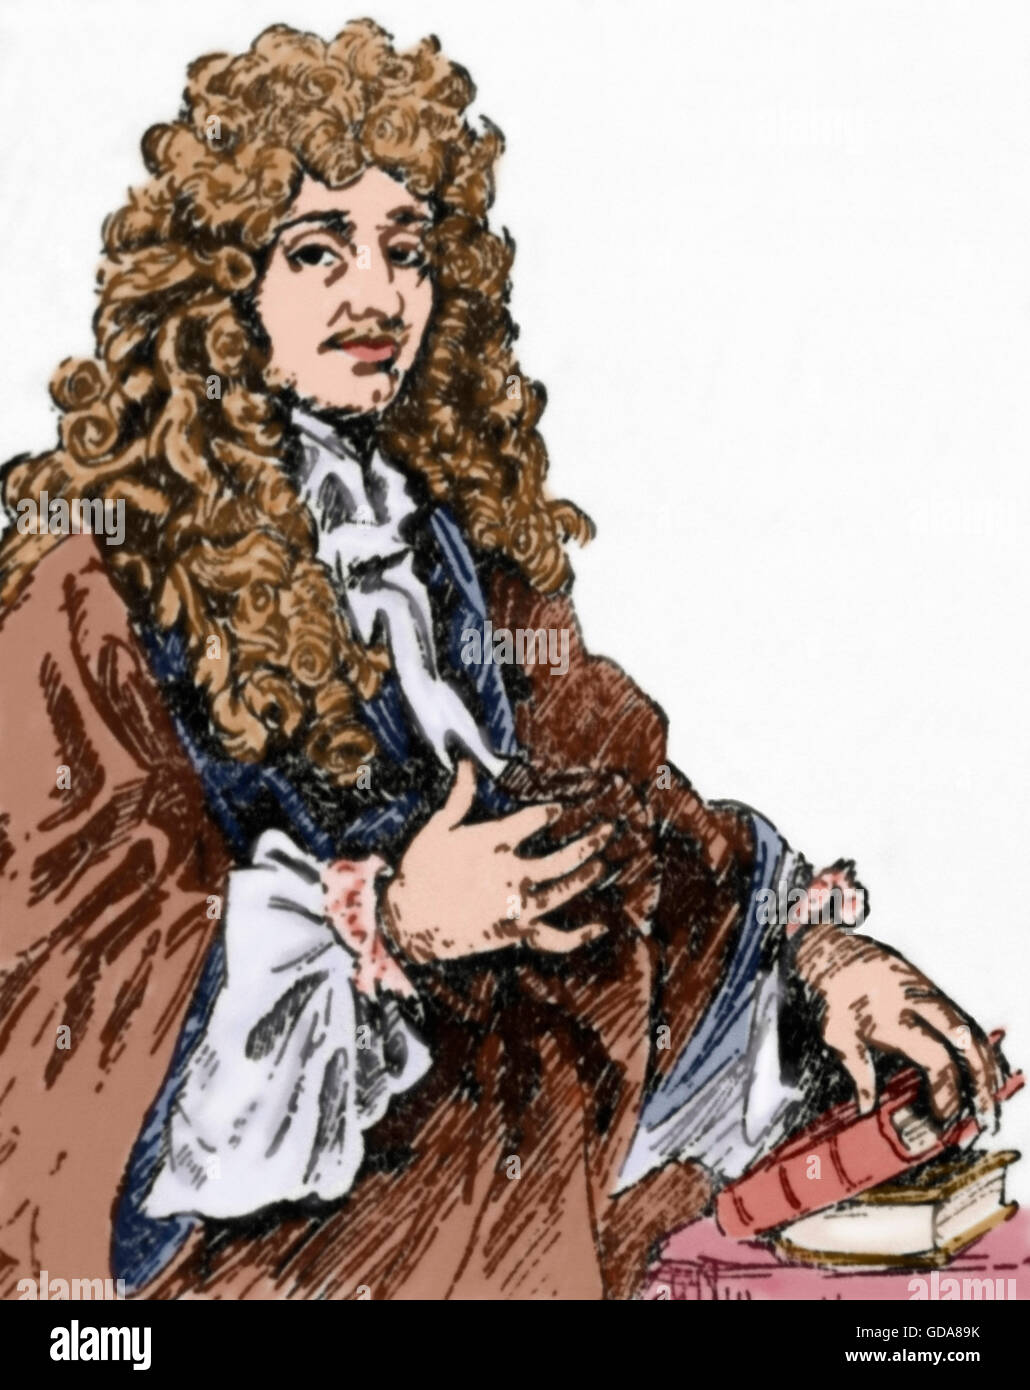 Christiaan Huygens (1629-1695). Niederländischer Mathematiker und Wissenschaftler. Er ist bekannt vor allem als Astronom, Physiker, Probabilist und Uhrmacherei. Porträt. Gravur. Farbige. Stockfoto